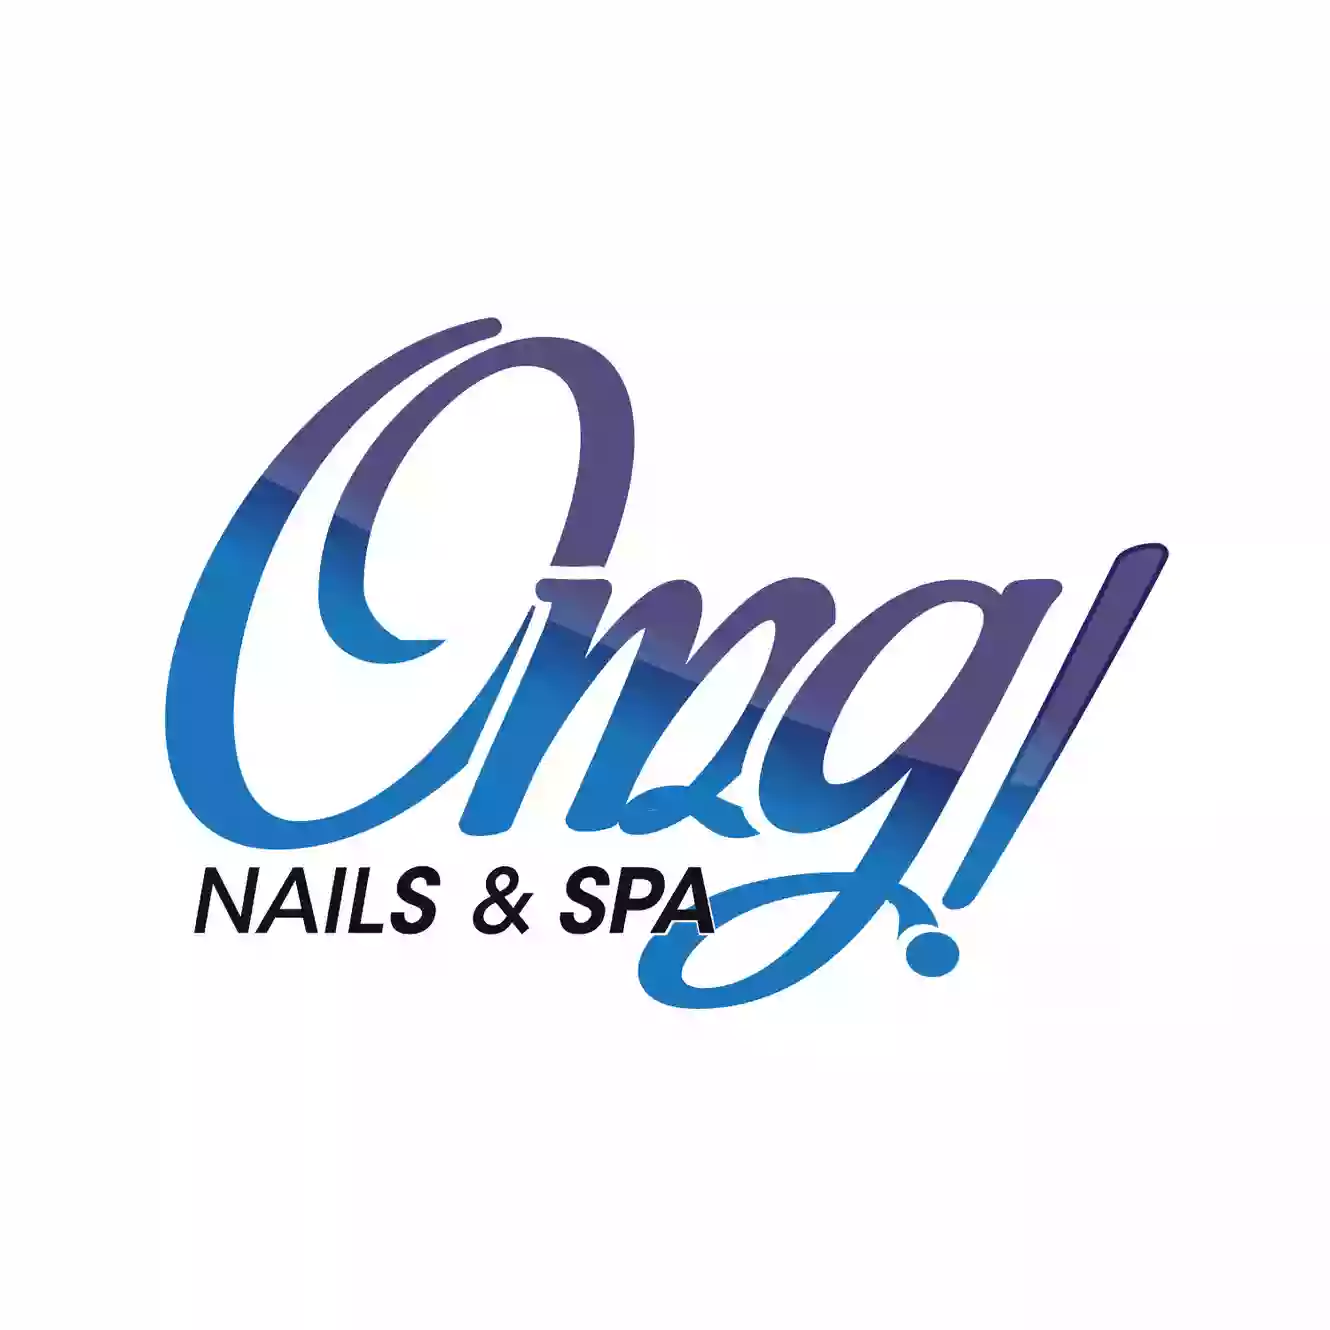 OMG! Nails & Spa